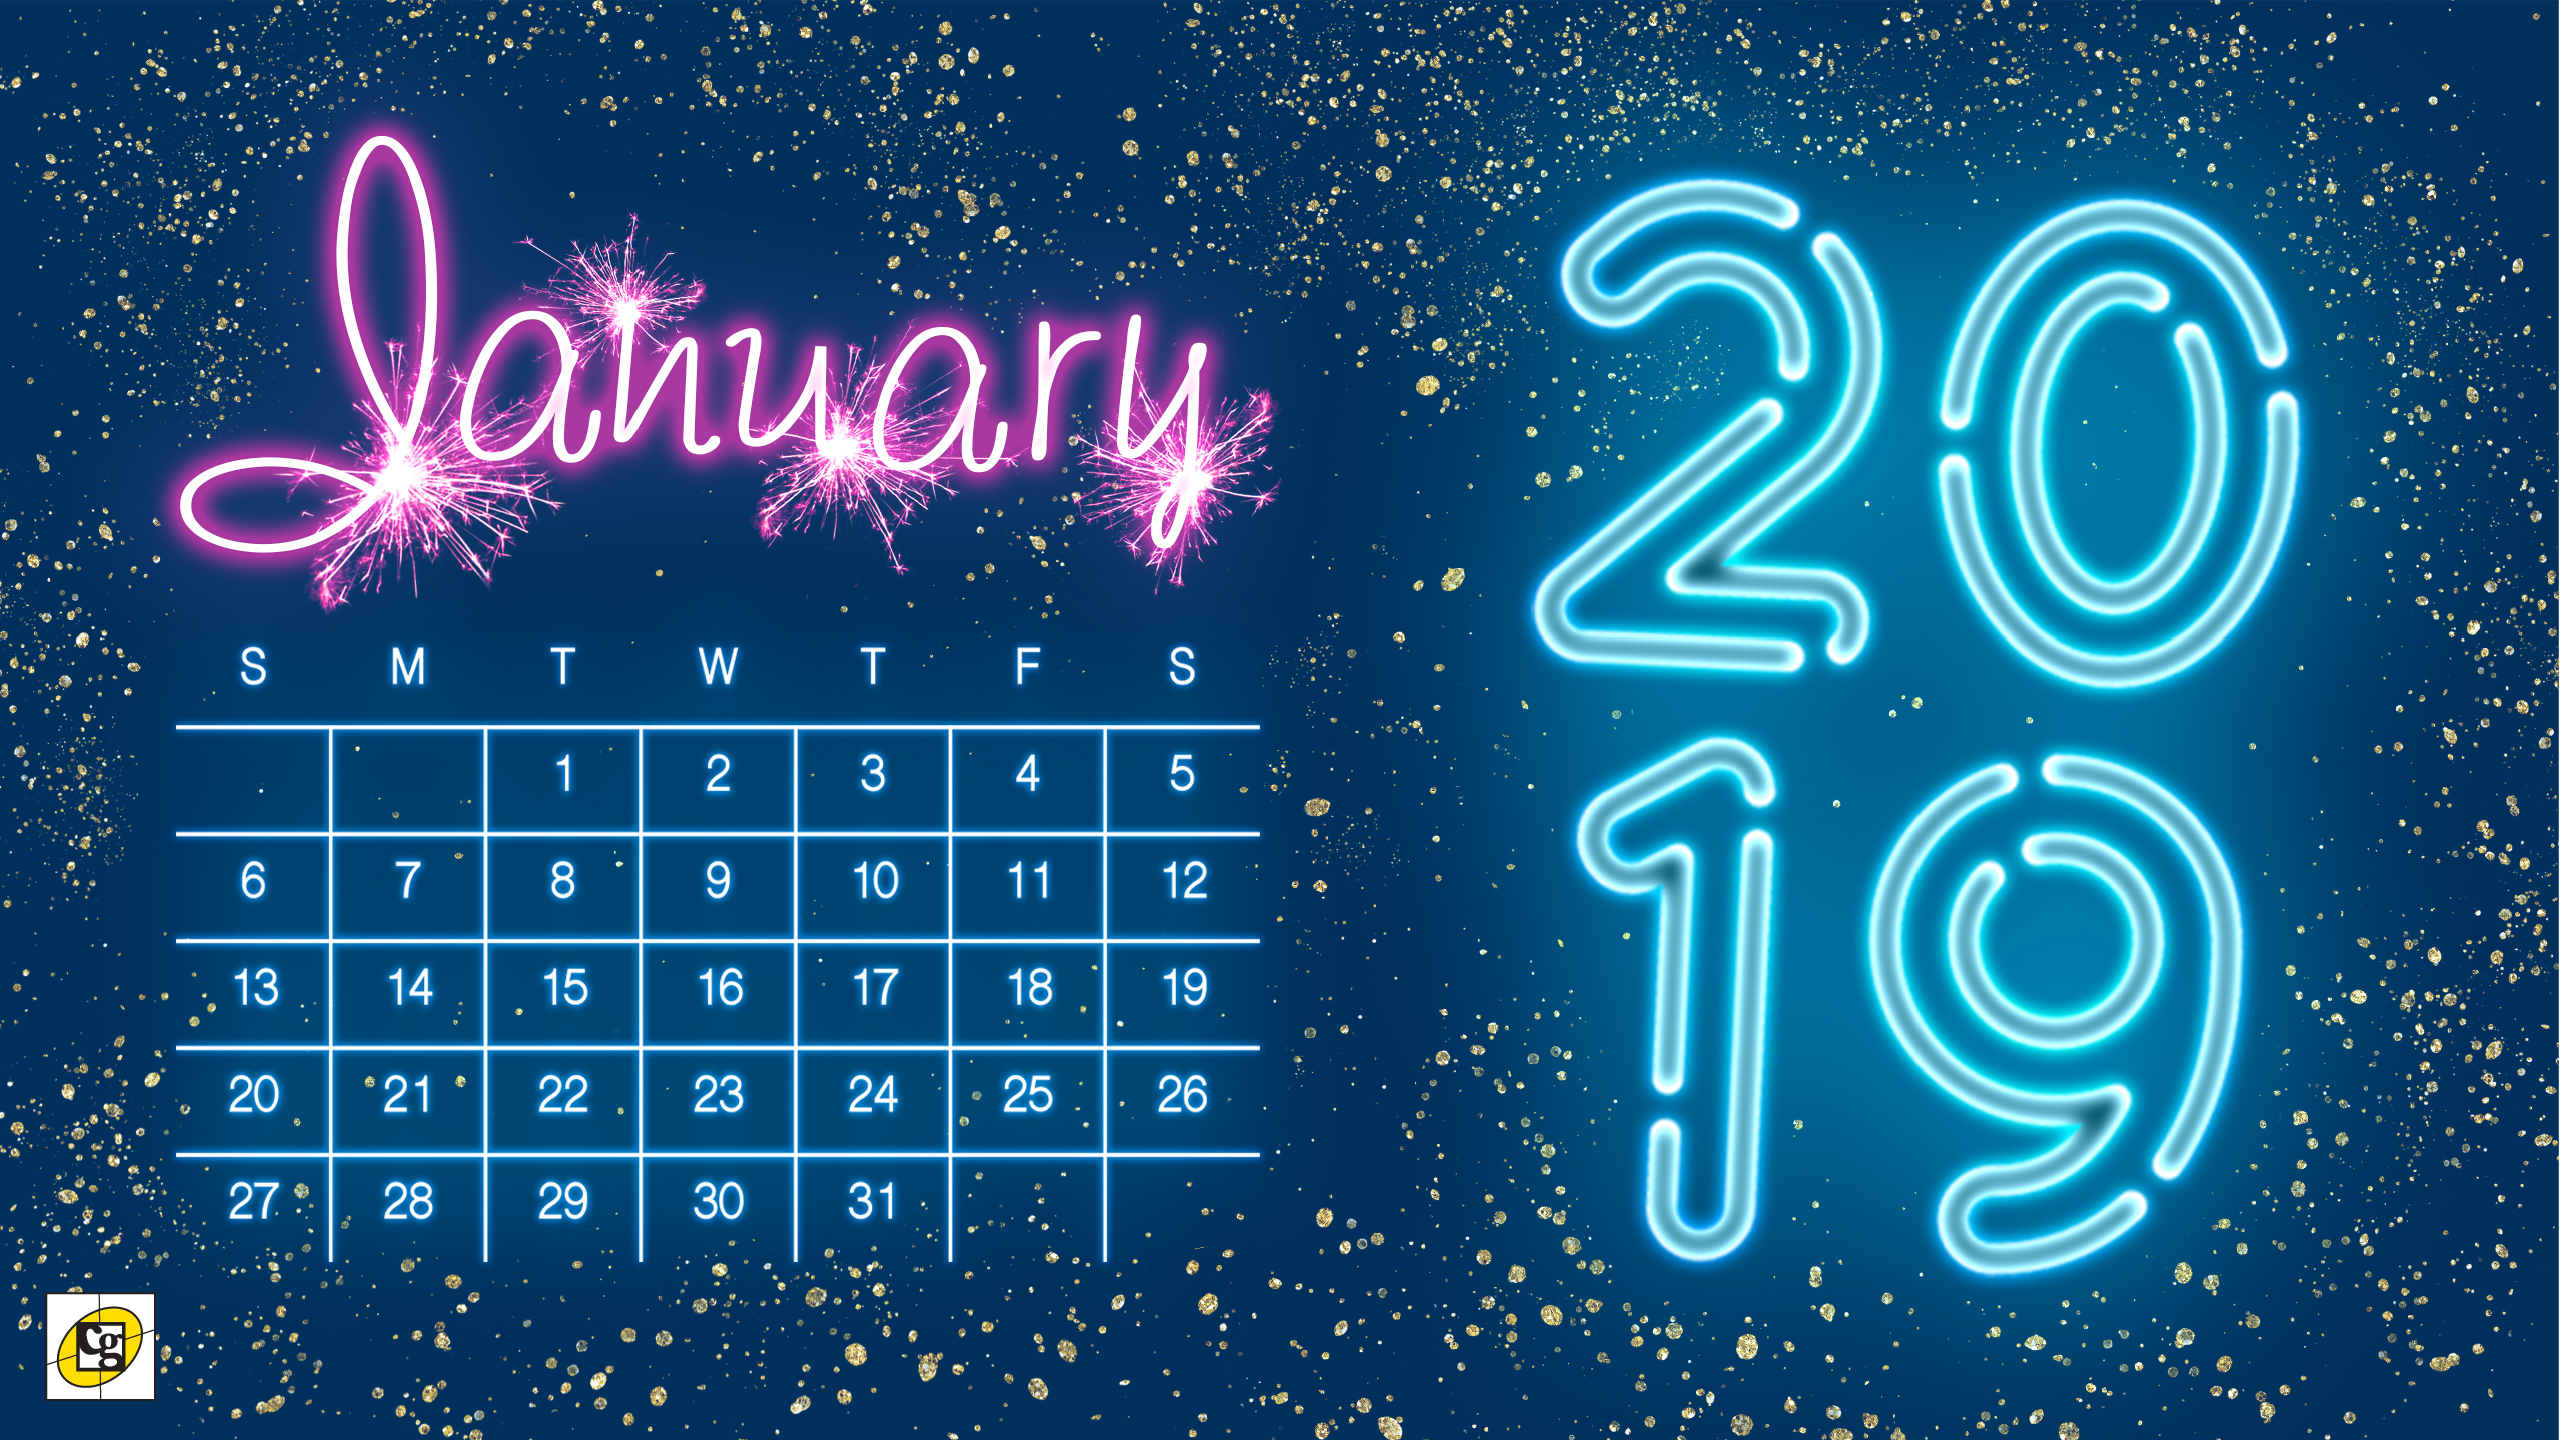 Online Calendar For January 2019